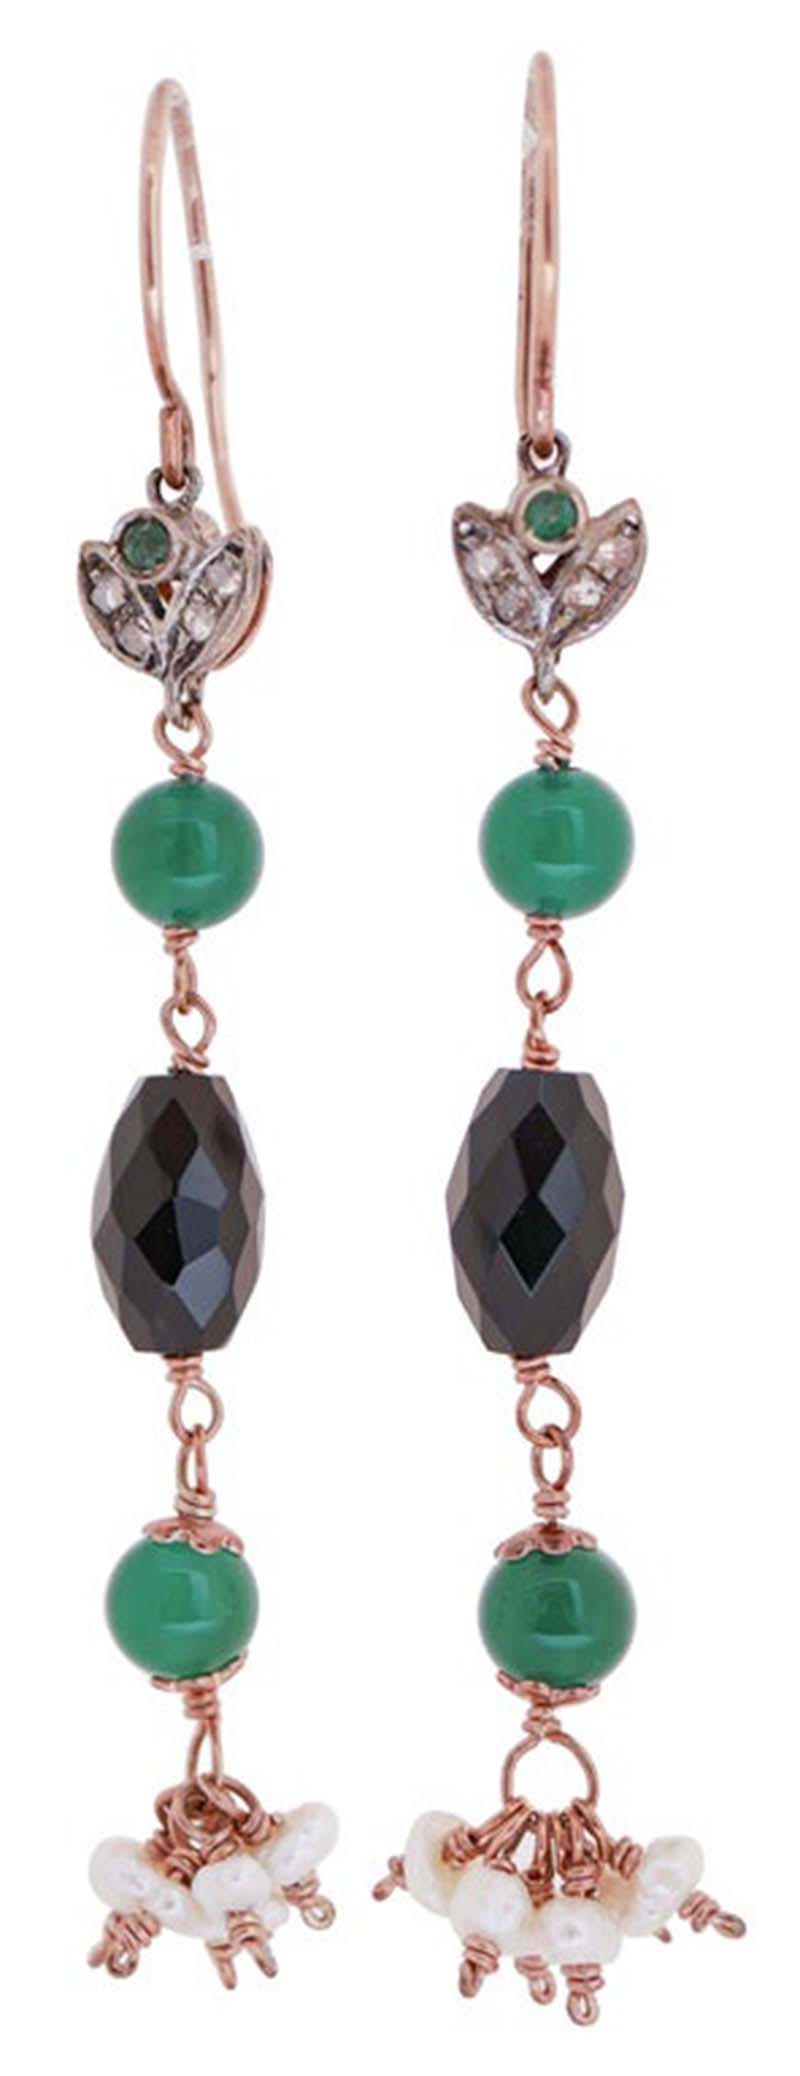 Ohrringe aus grünem Achat, Onyx, Smaragden, Diamanten, Perlen, Roségold und Silber.